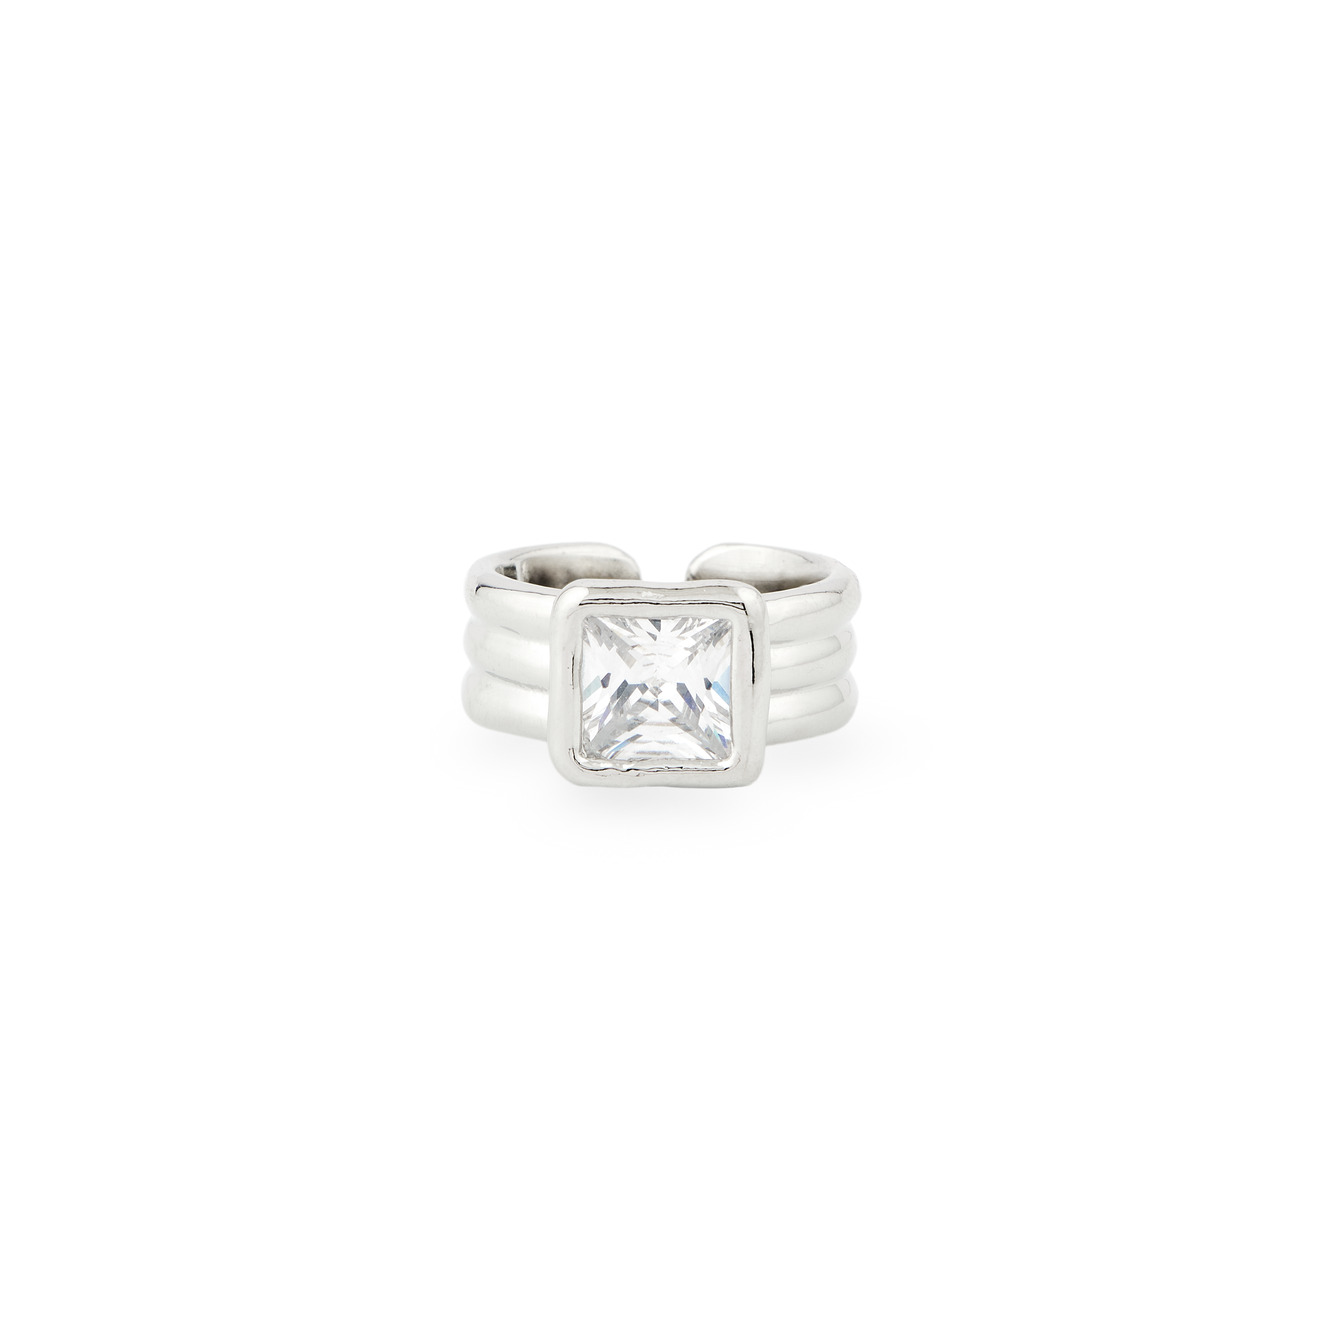 Herald Percy Серебристое кольцо с квадратным кристаллом herald percy серебристое незамкнутое кольцо с кристаллами